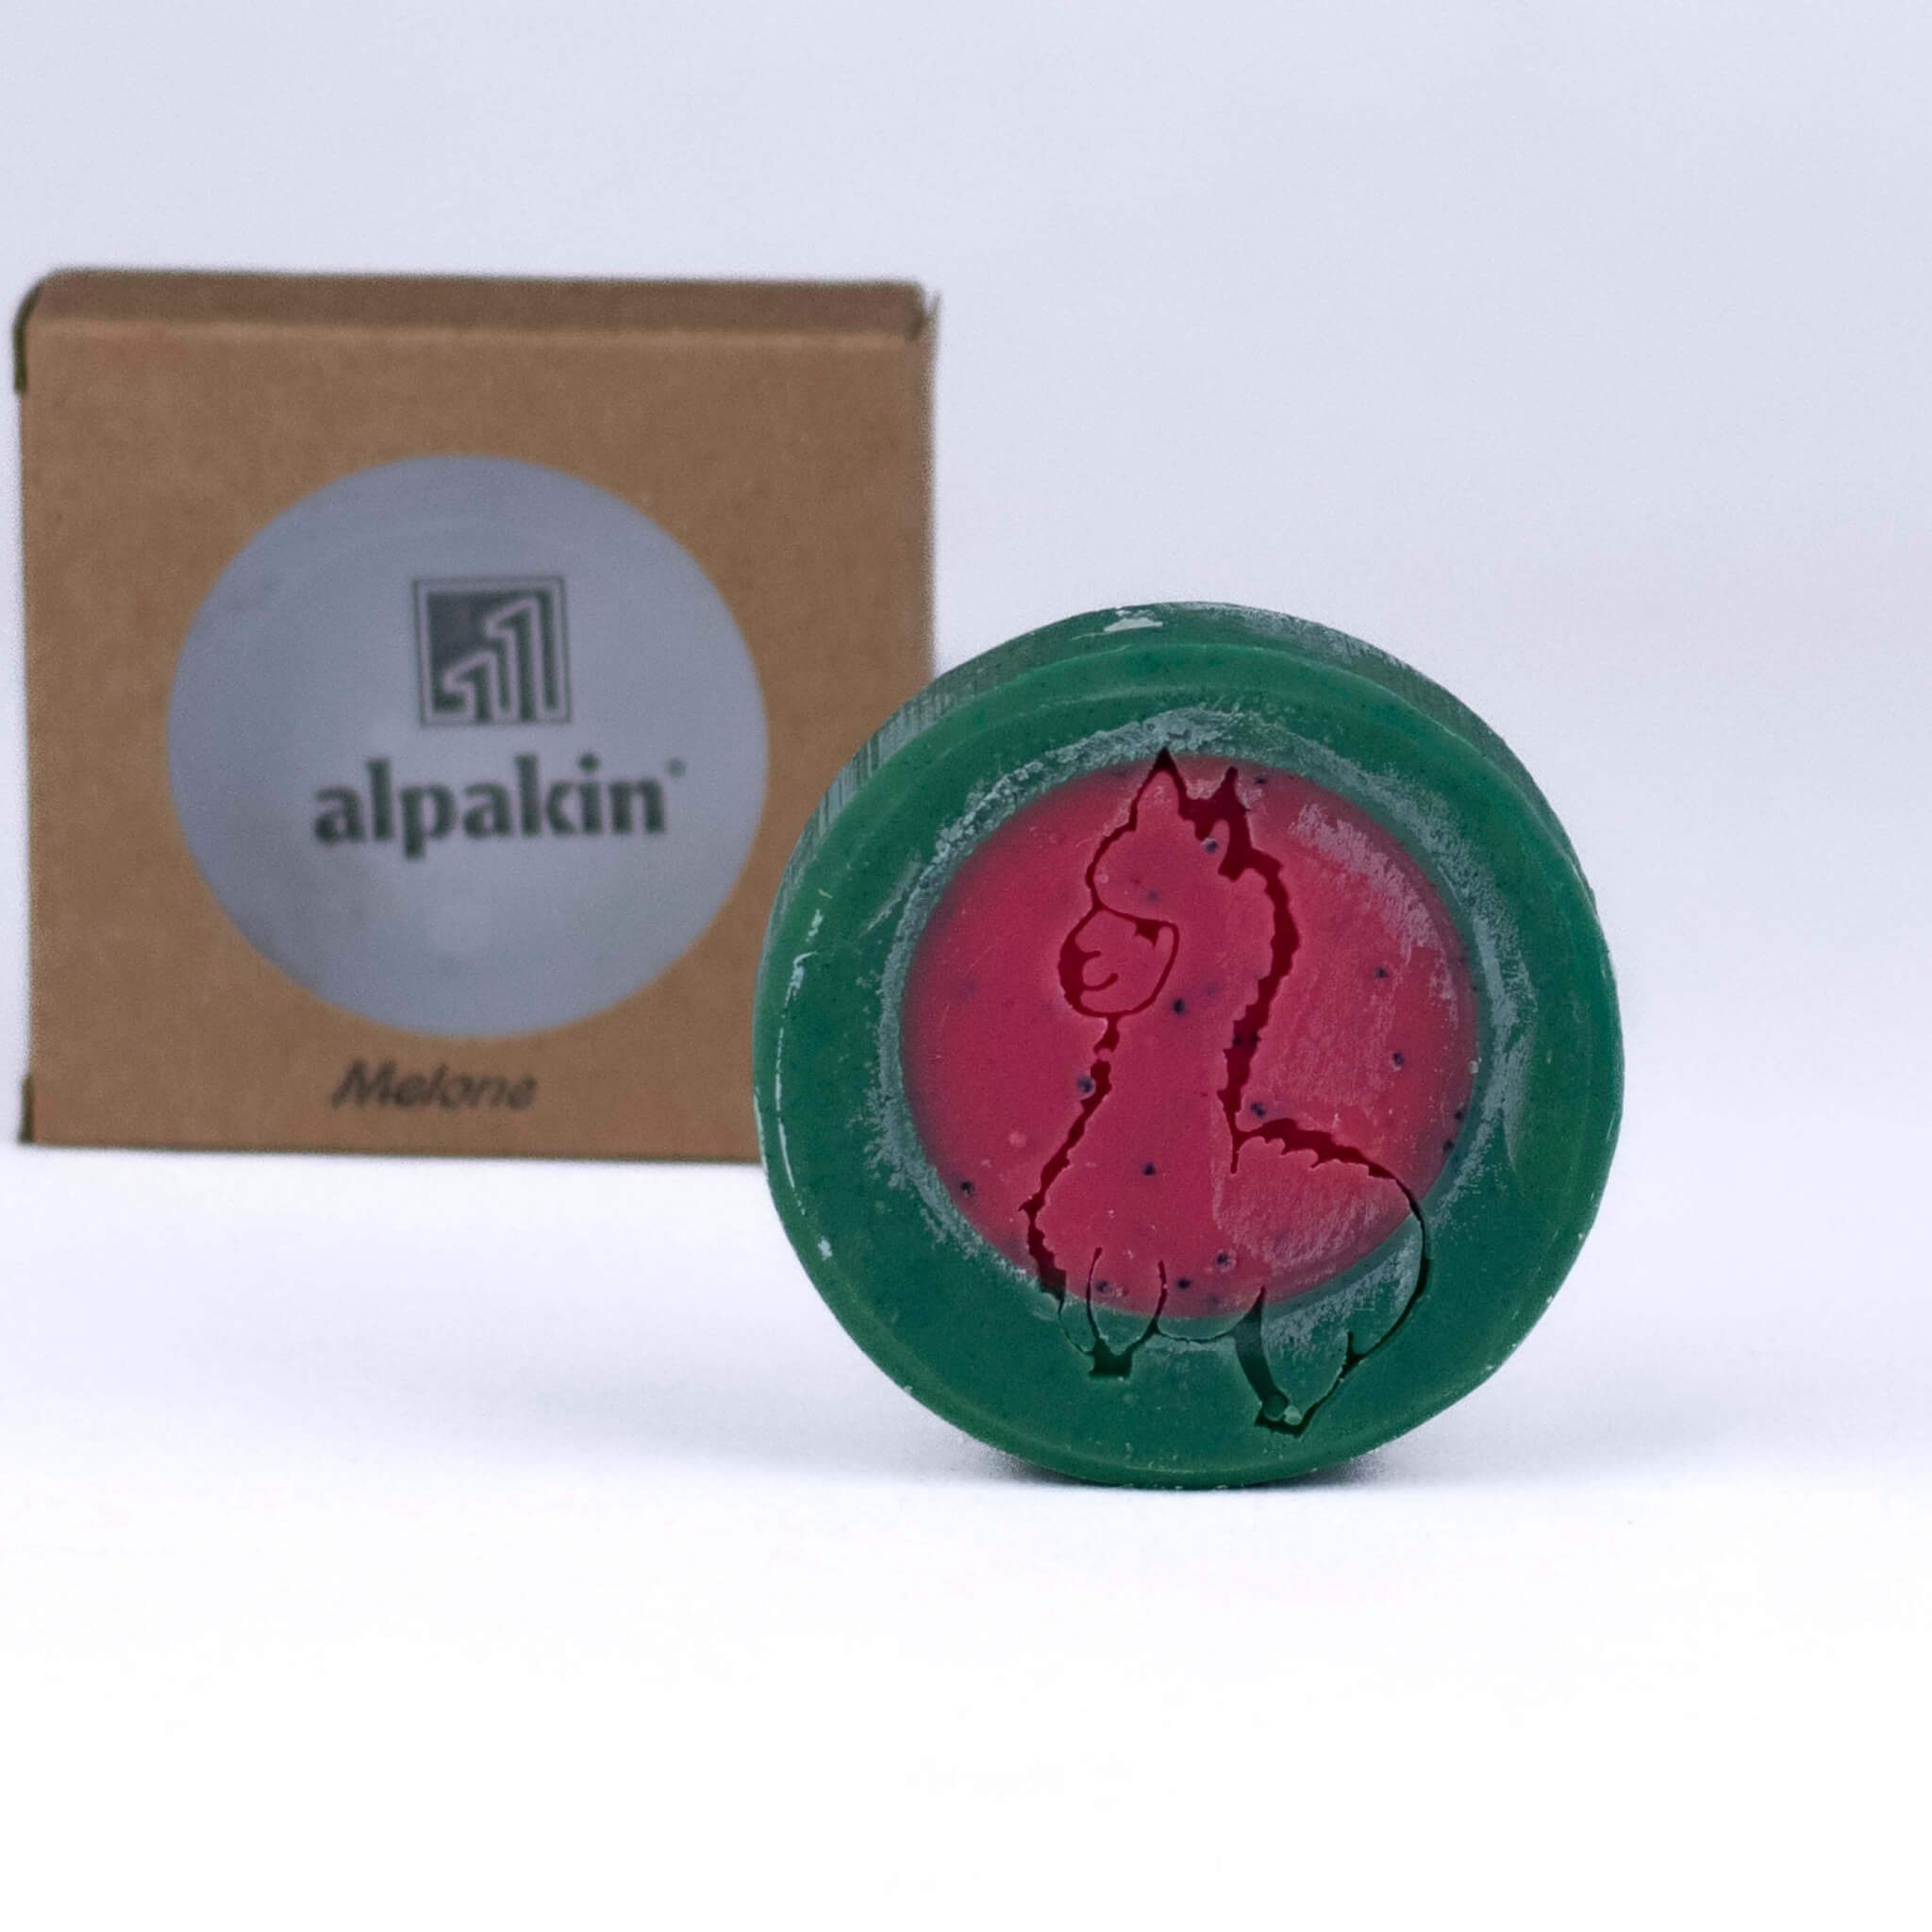 Alpaka Seife mit Keratin von Alpakin Dufterlebnis Melone